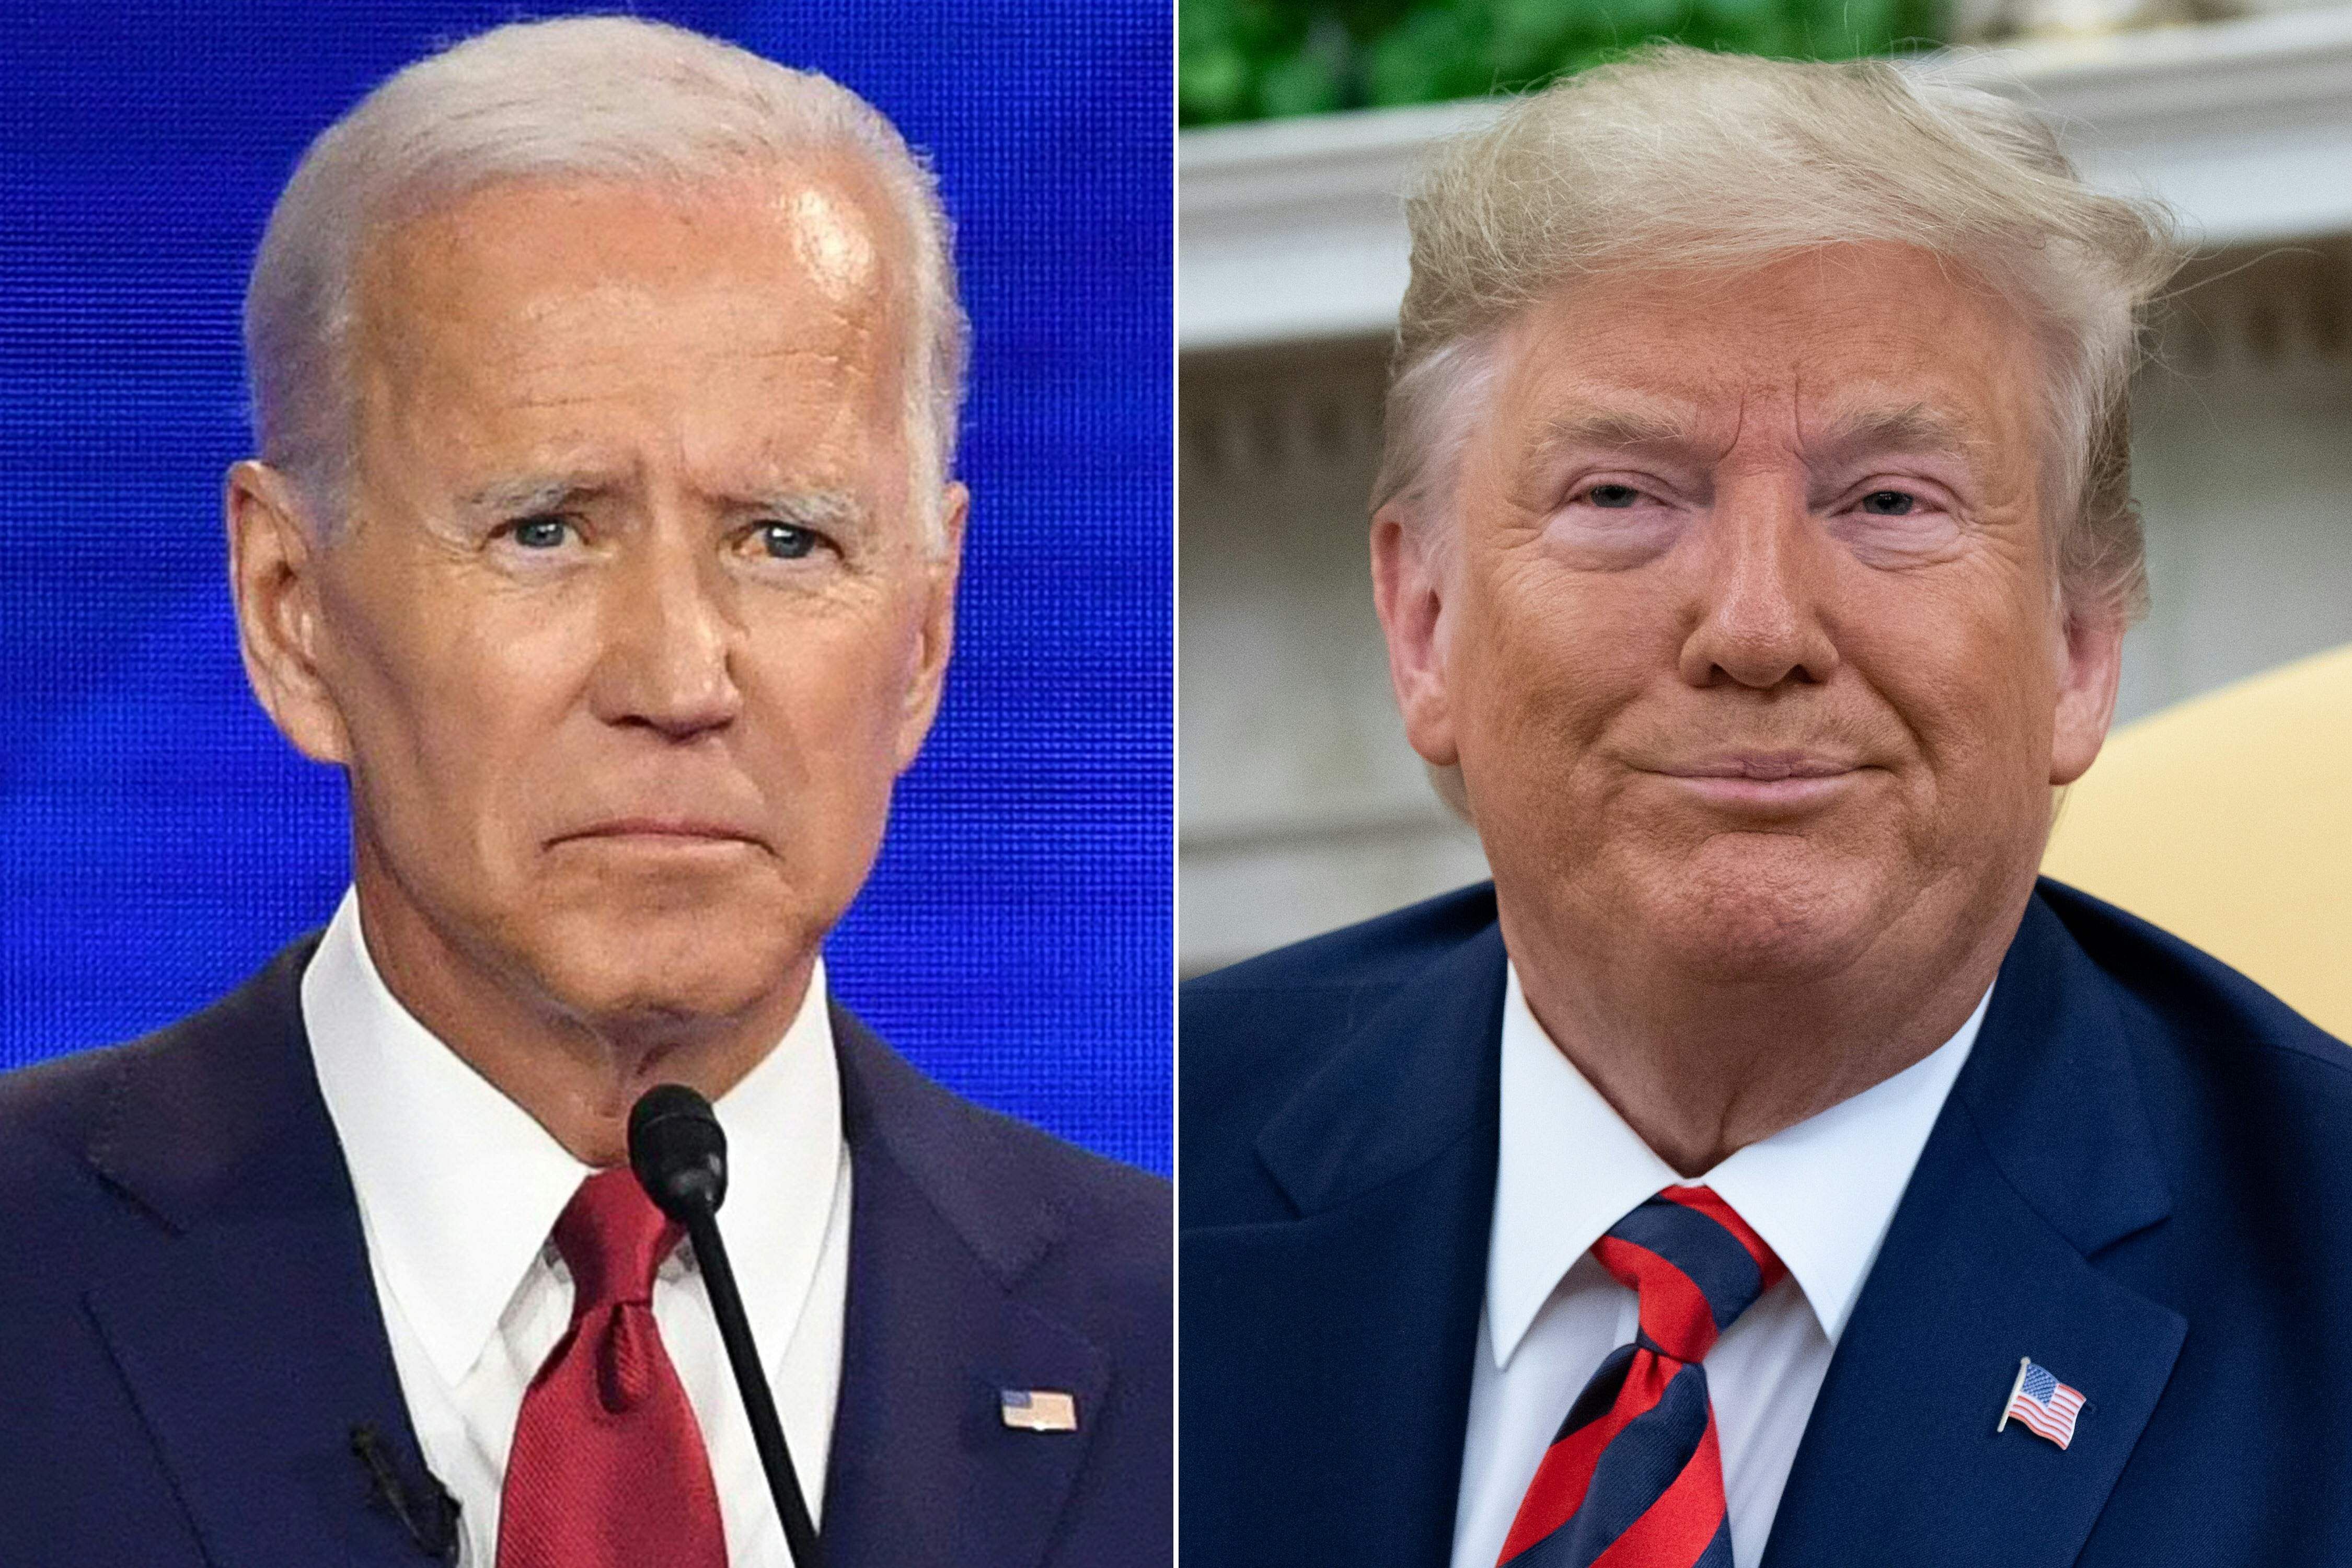 former Vice President Joe Biden and President Donald Trump. Credit: AFP Photos